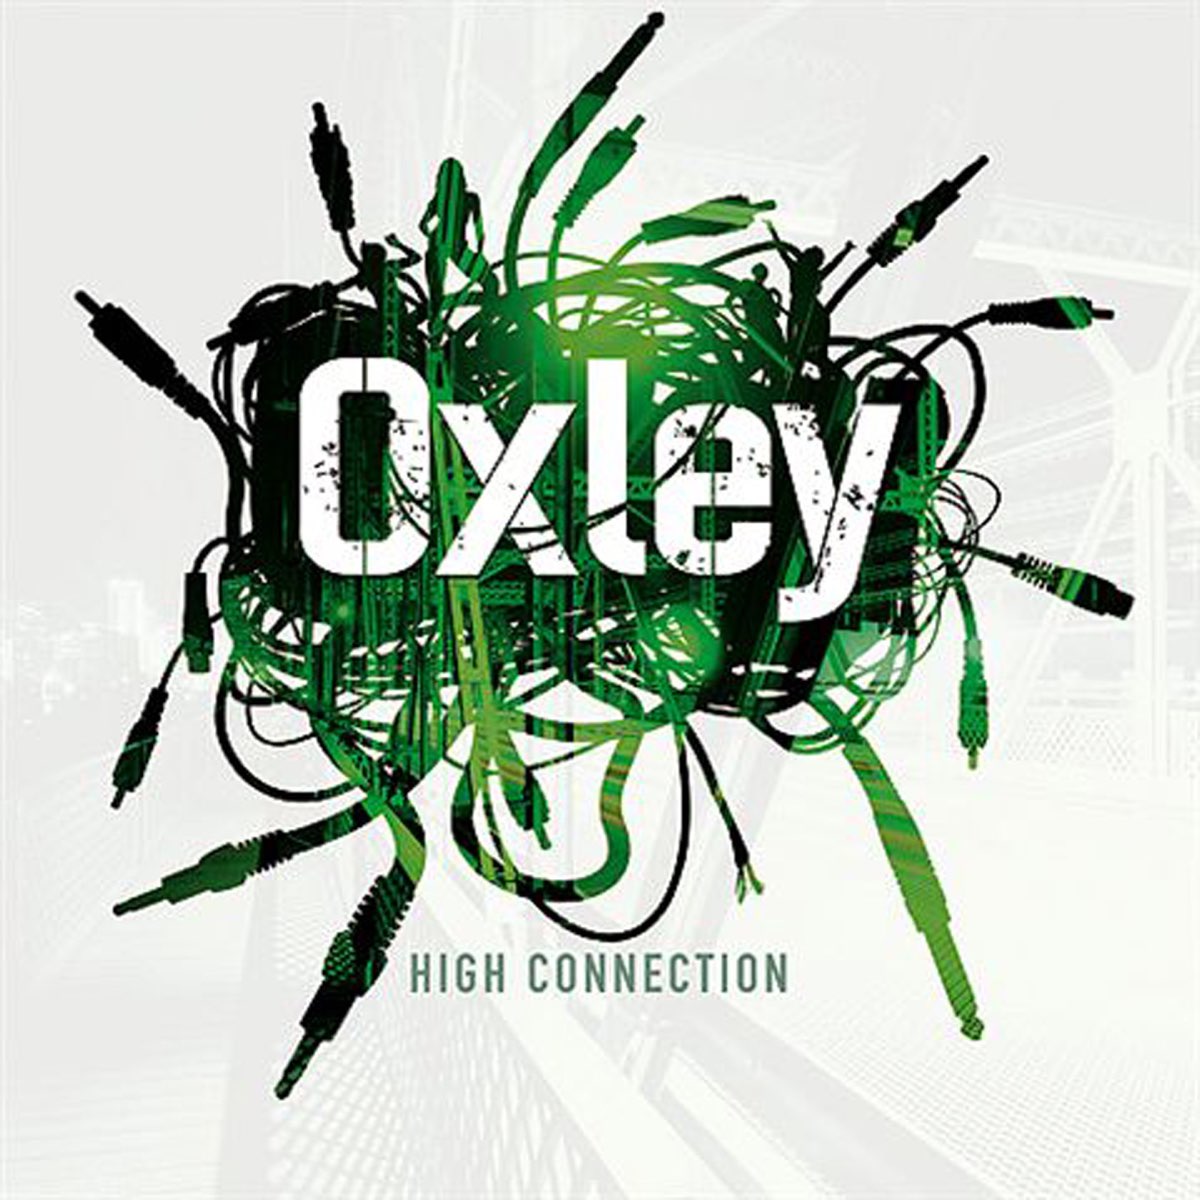 Хай альбом. Oxley. Hi connect. Ed Oxley. Oxley vector.